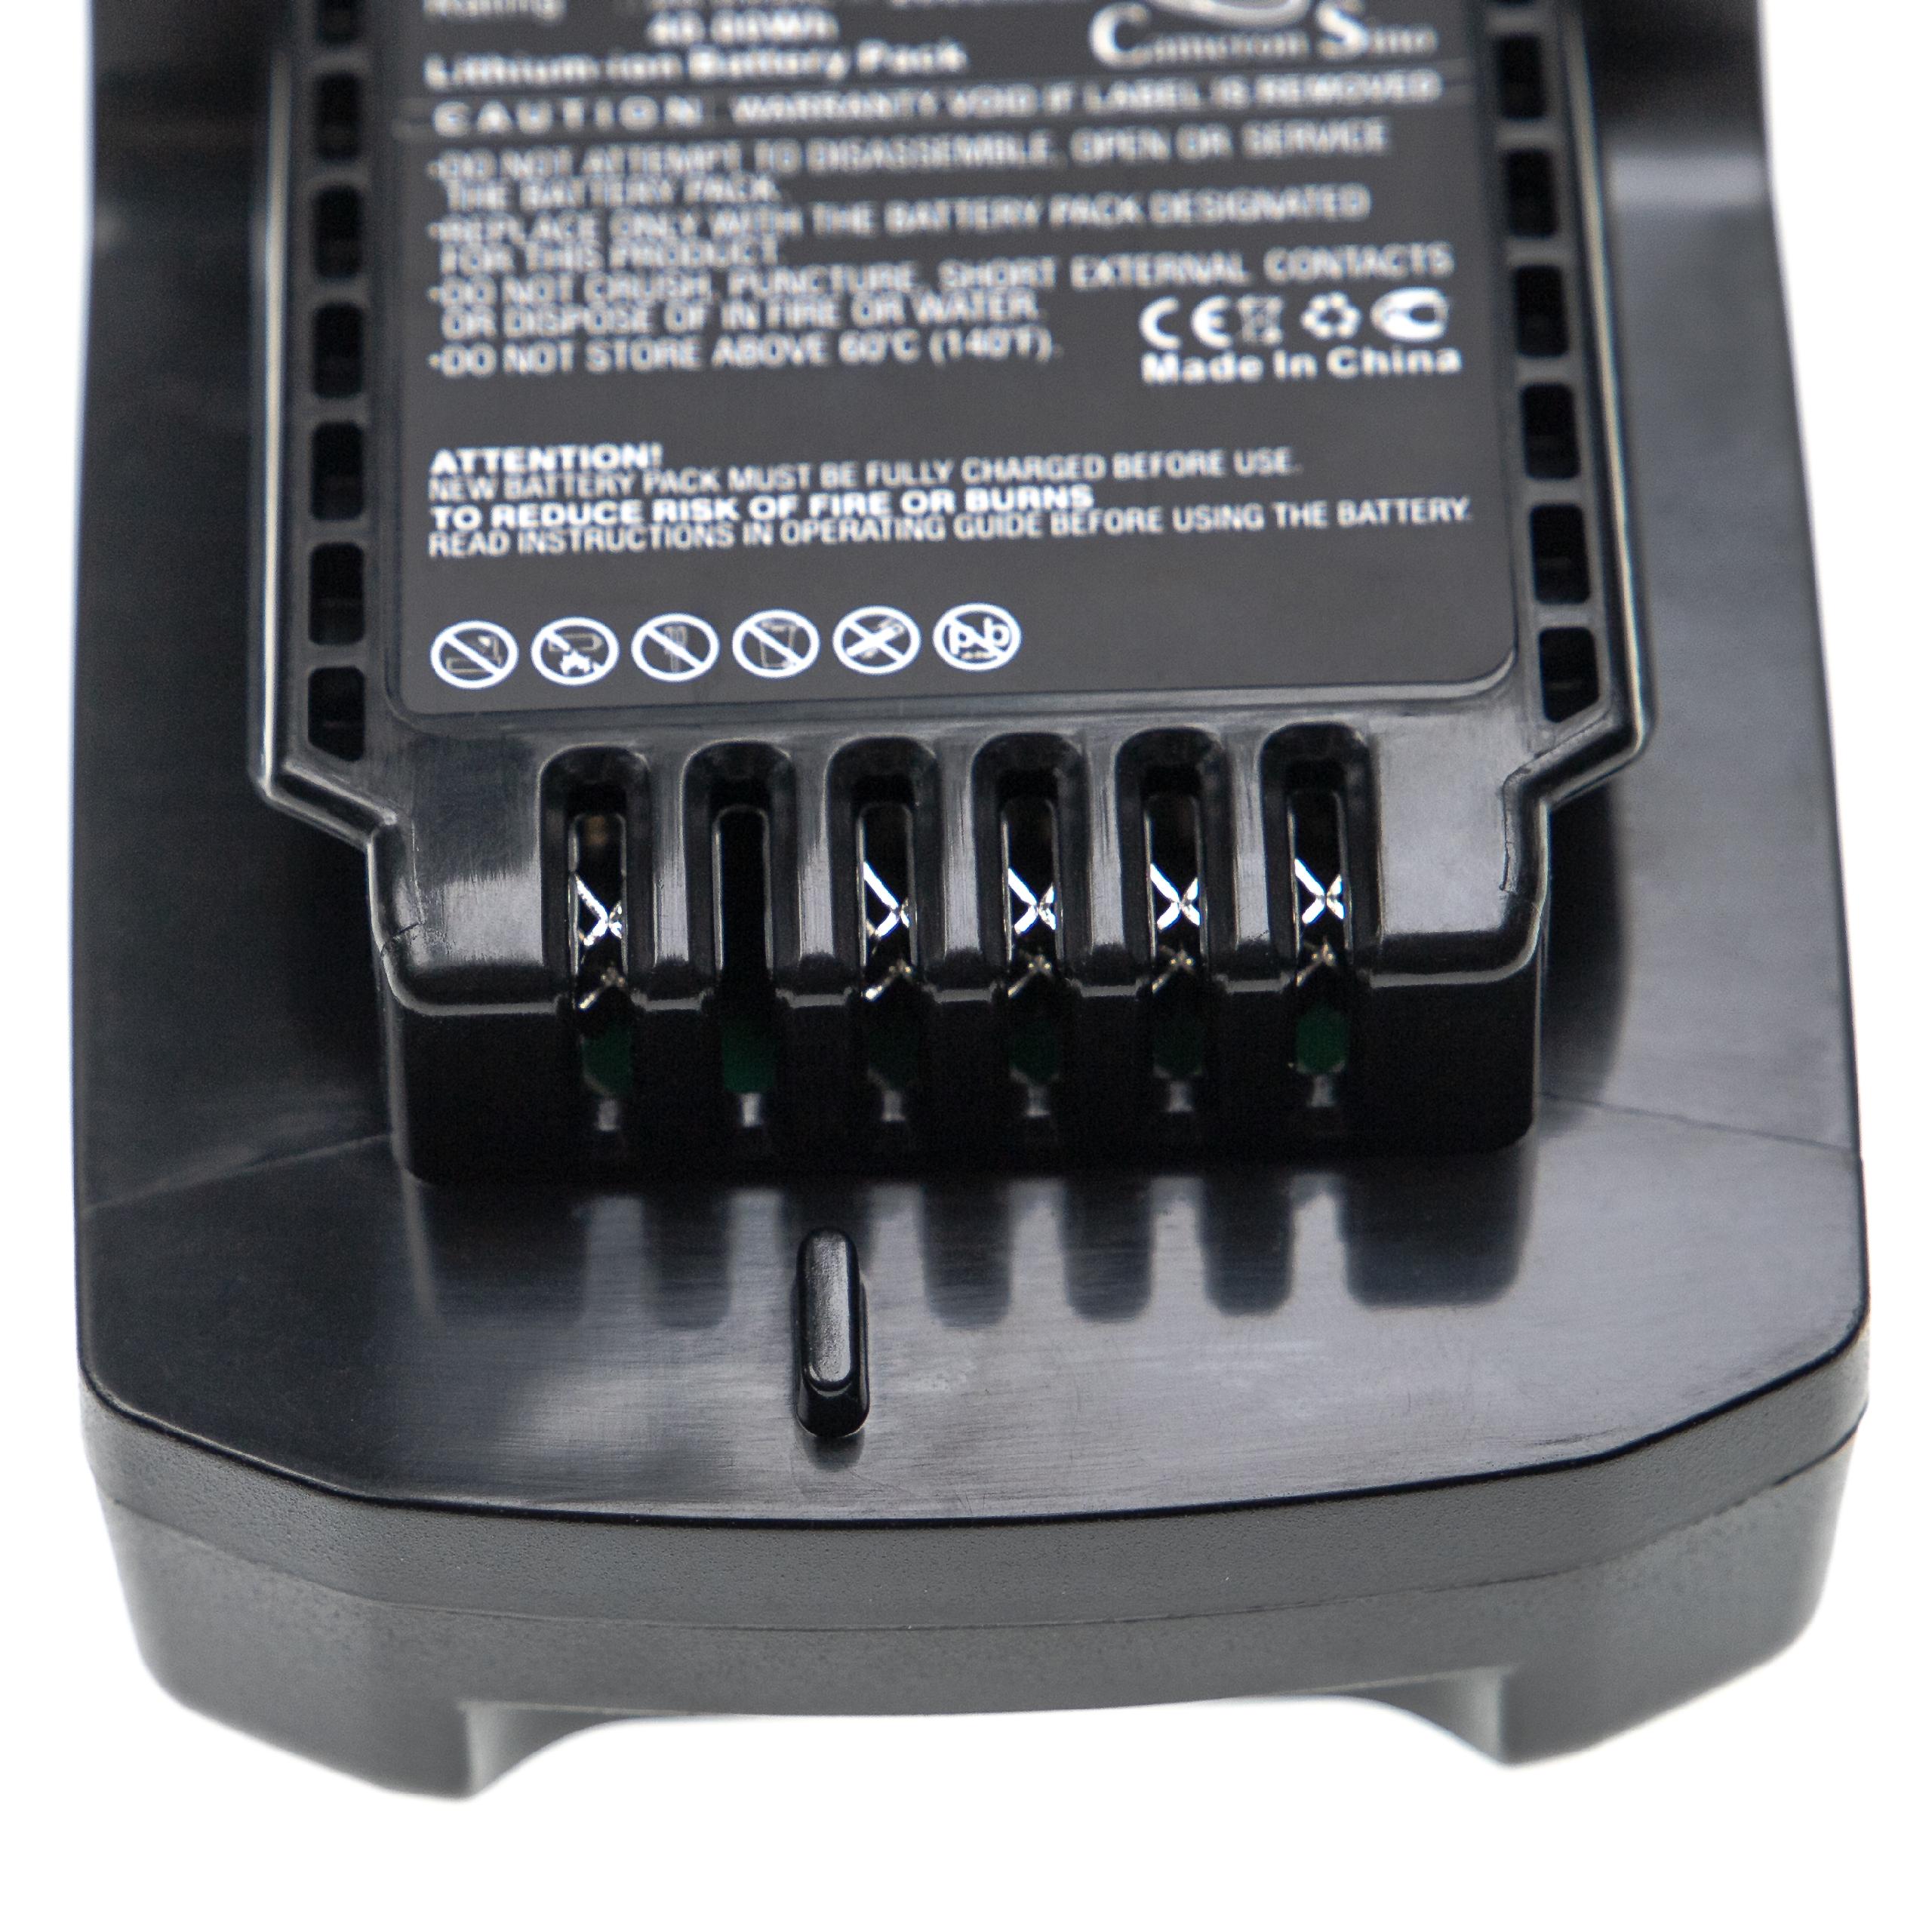 Batterie remplace Ingersoll Rand BL2022, BL2012, BL2010 pour outil électrique - 2000 mAh, 20 V, Li-ion